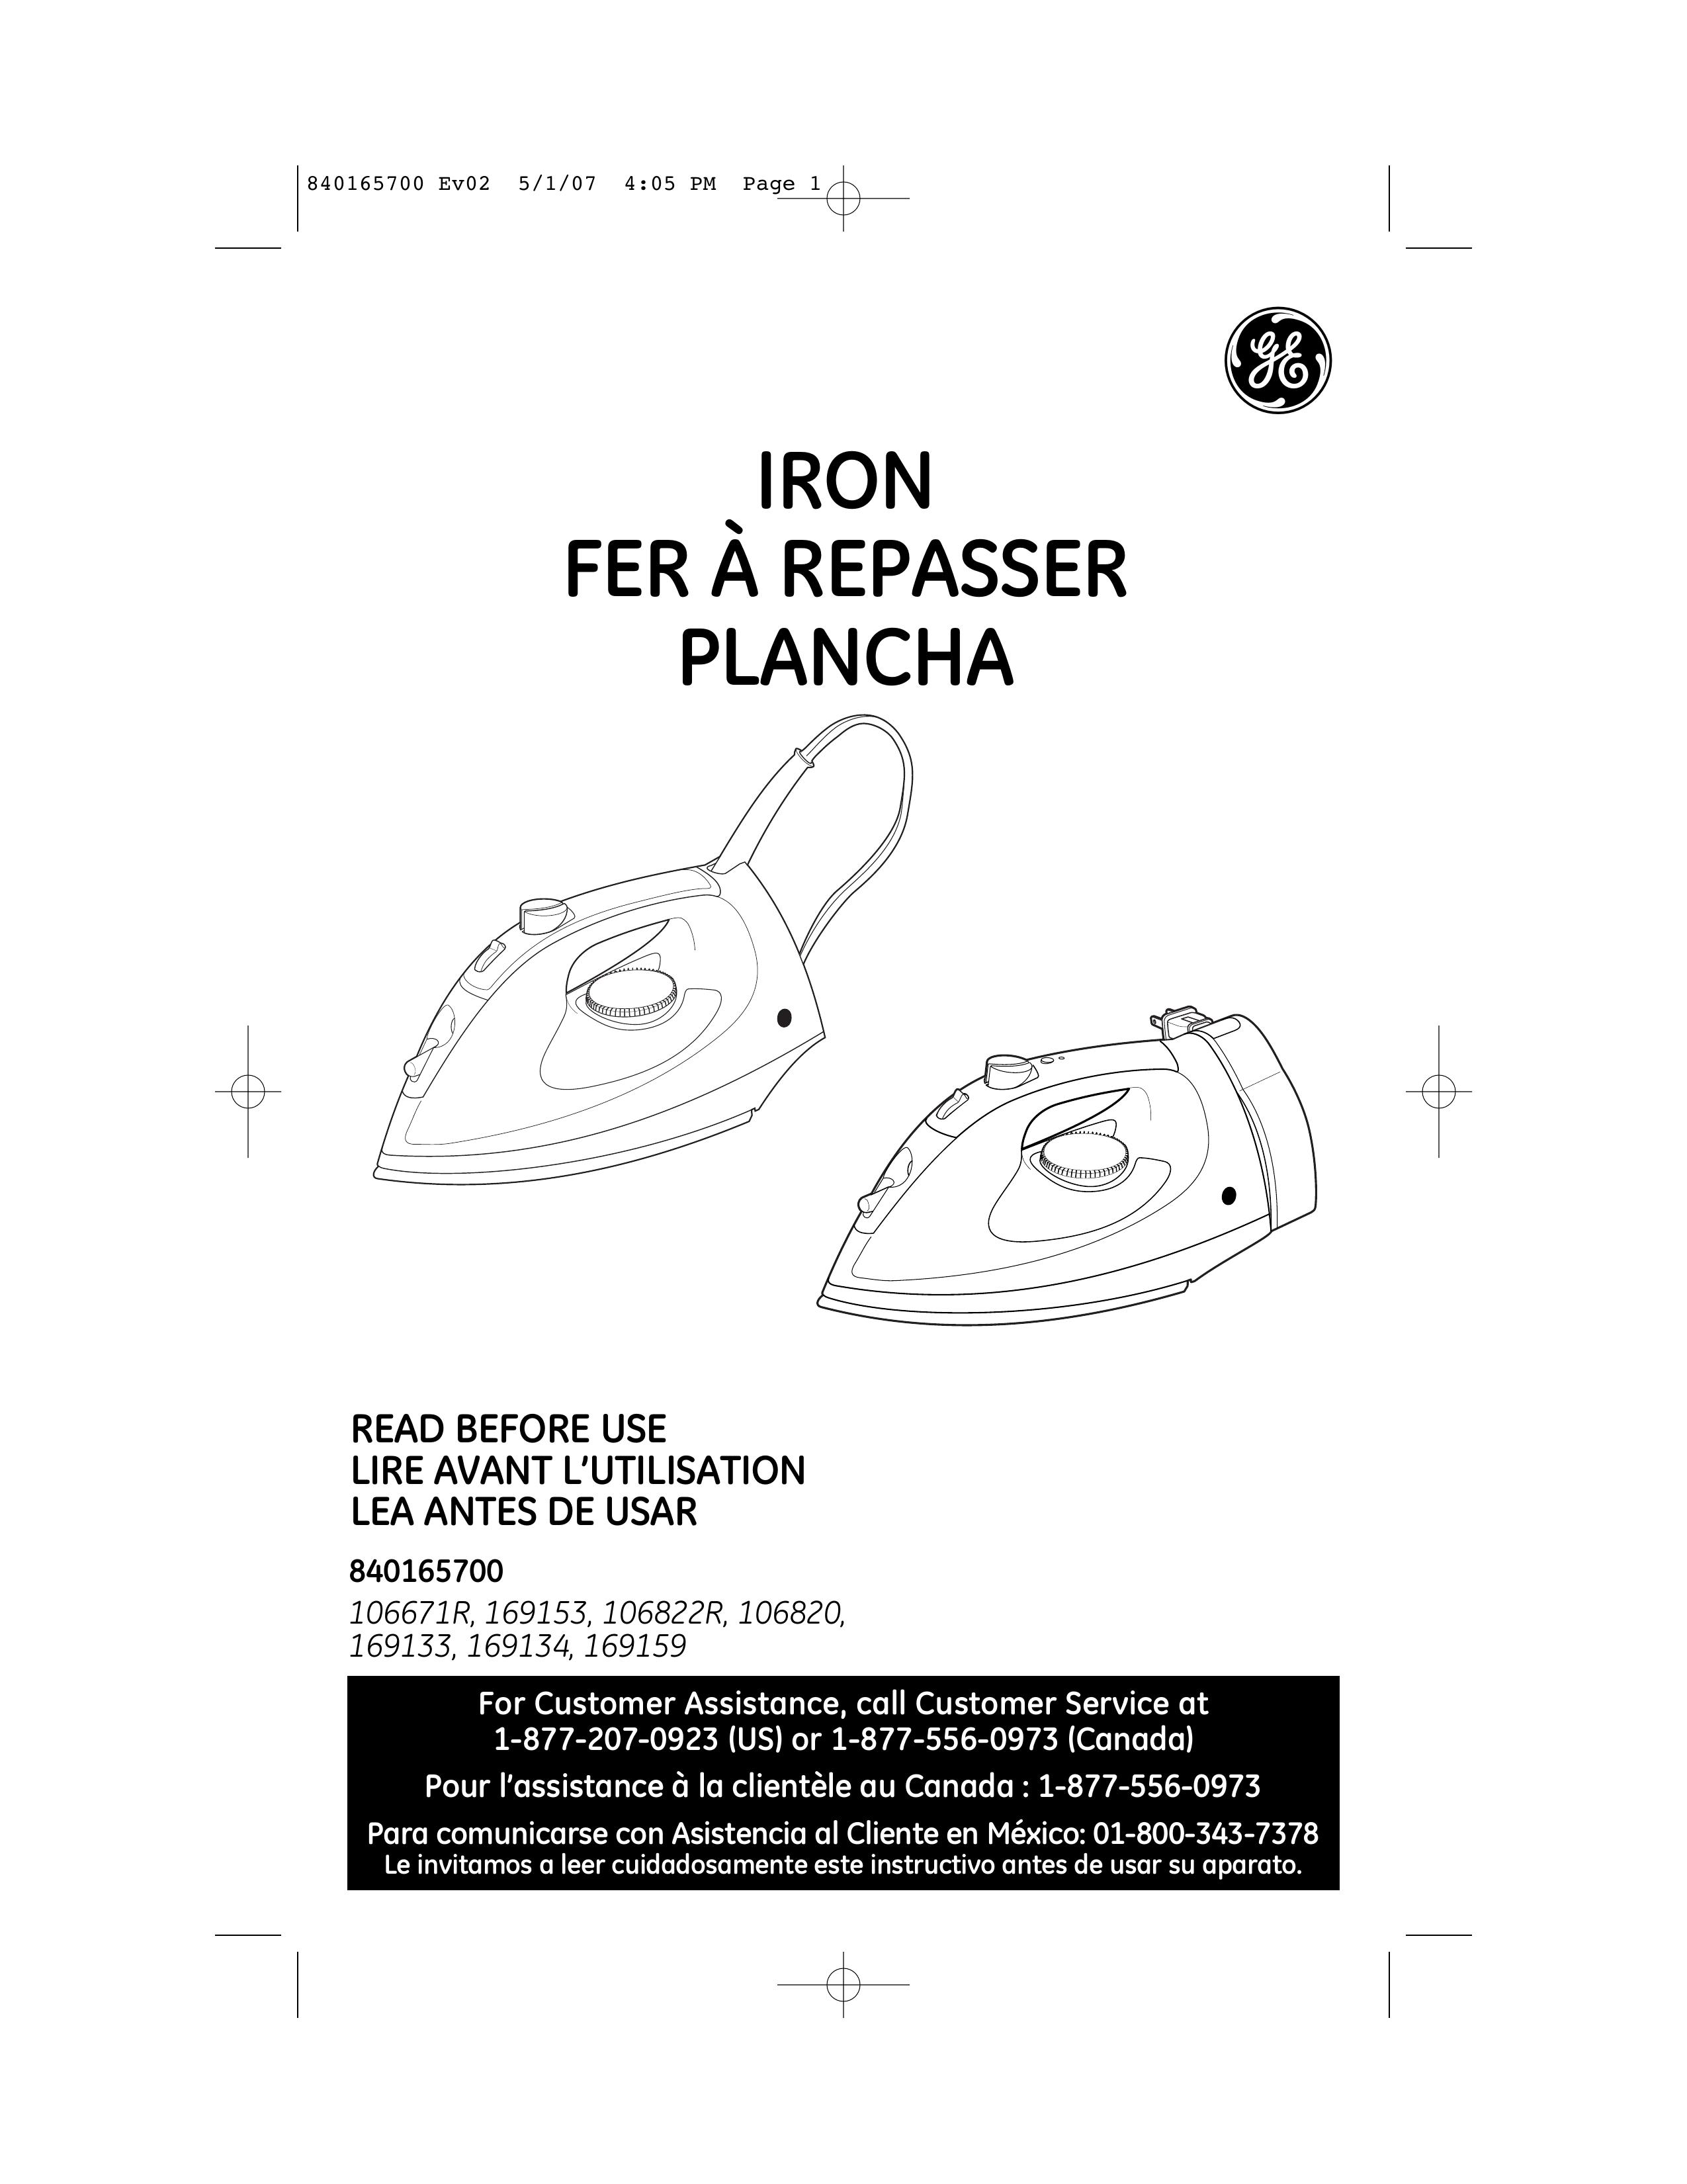 GE 106822R Iron User Manual